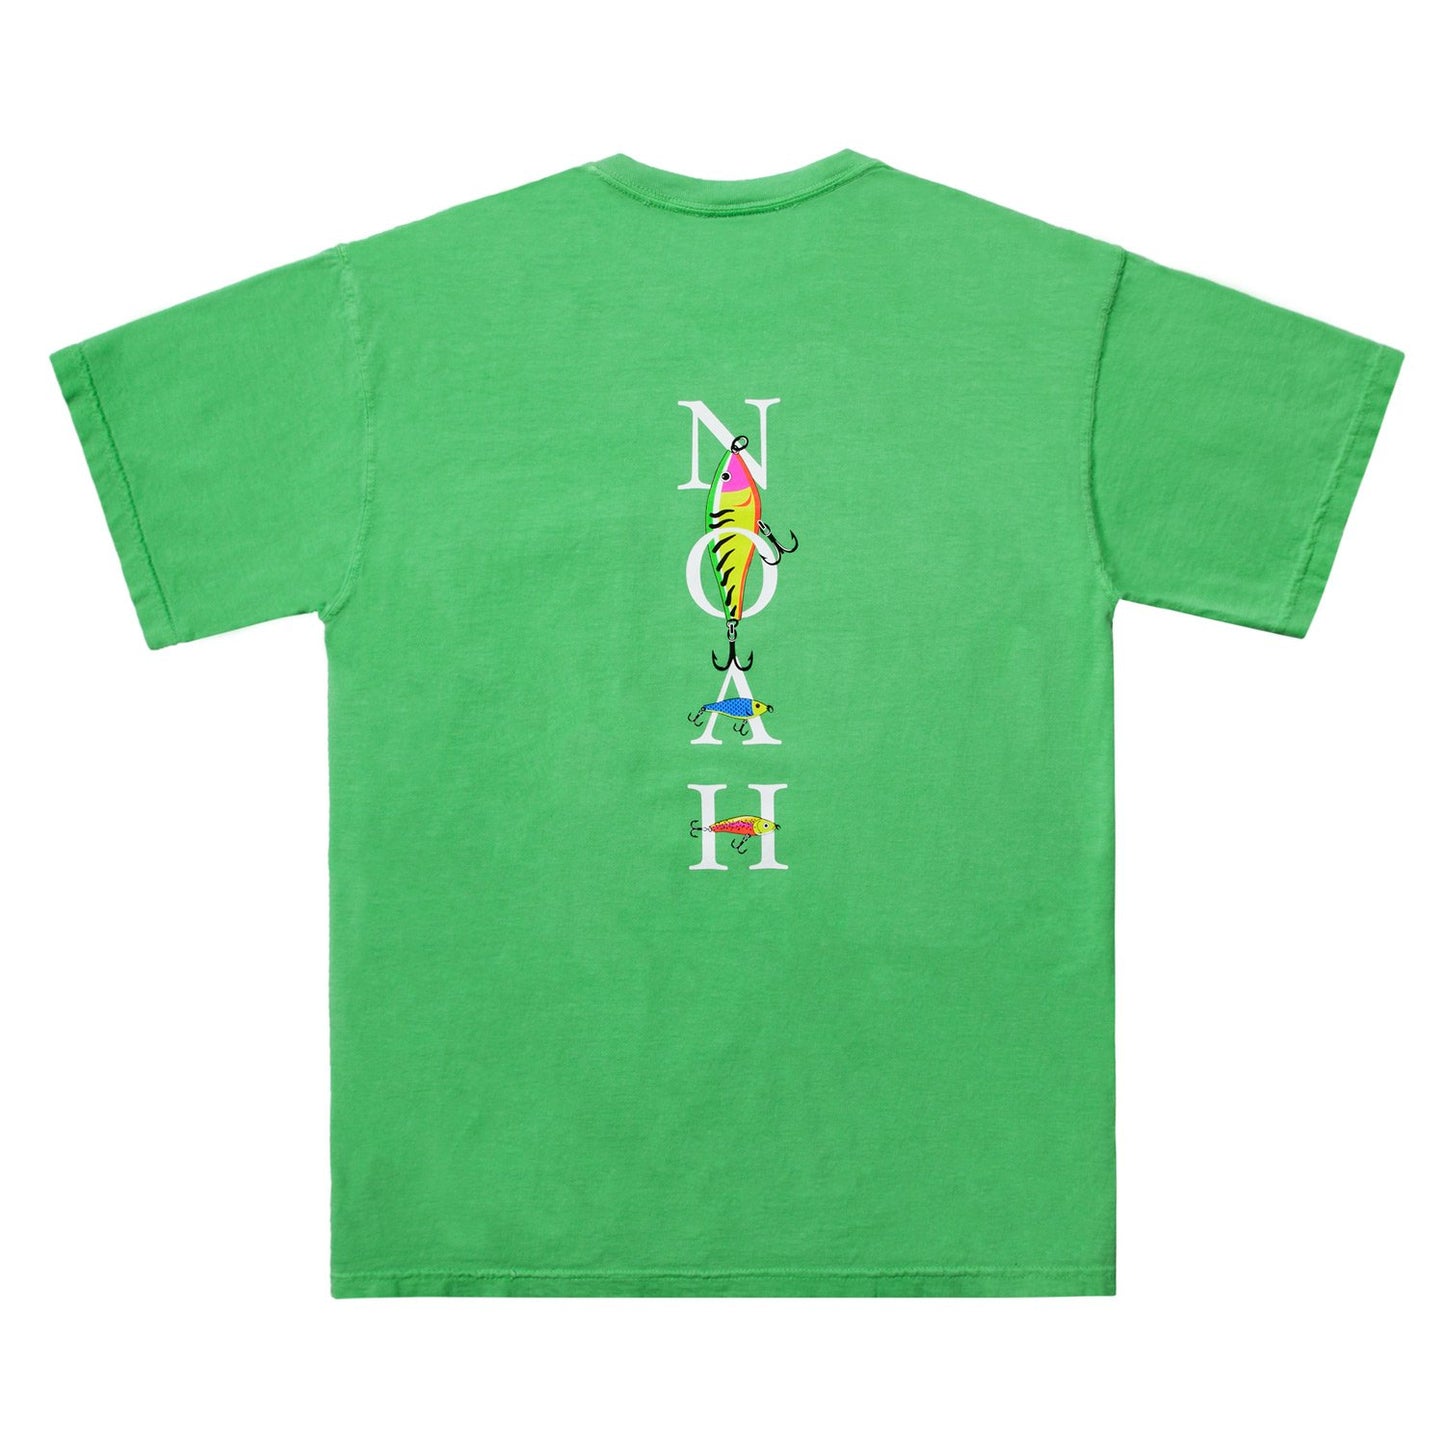 Noah - Green Fishing Lure Logo T-Shirt